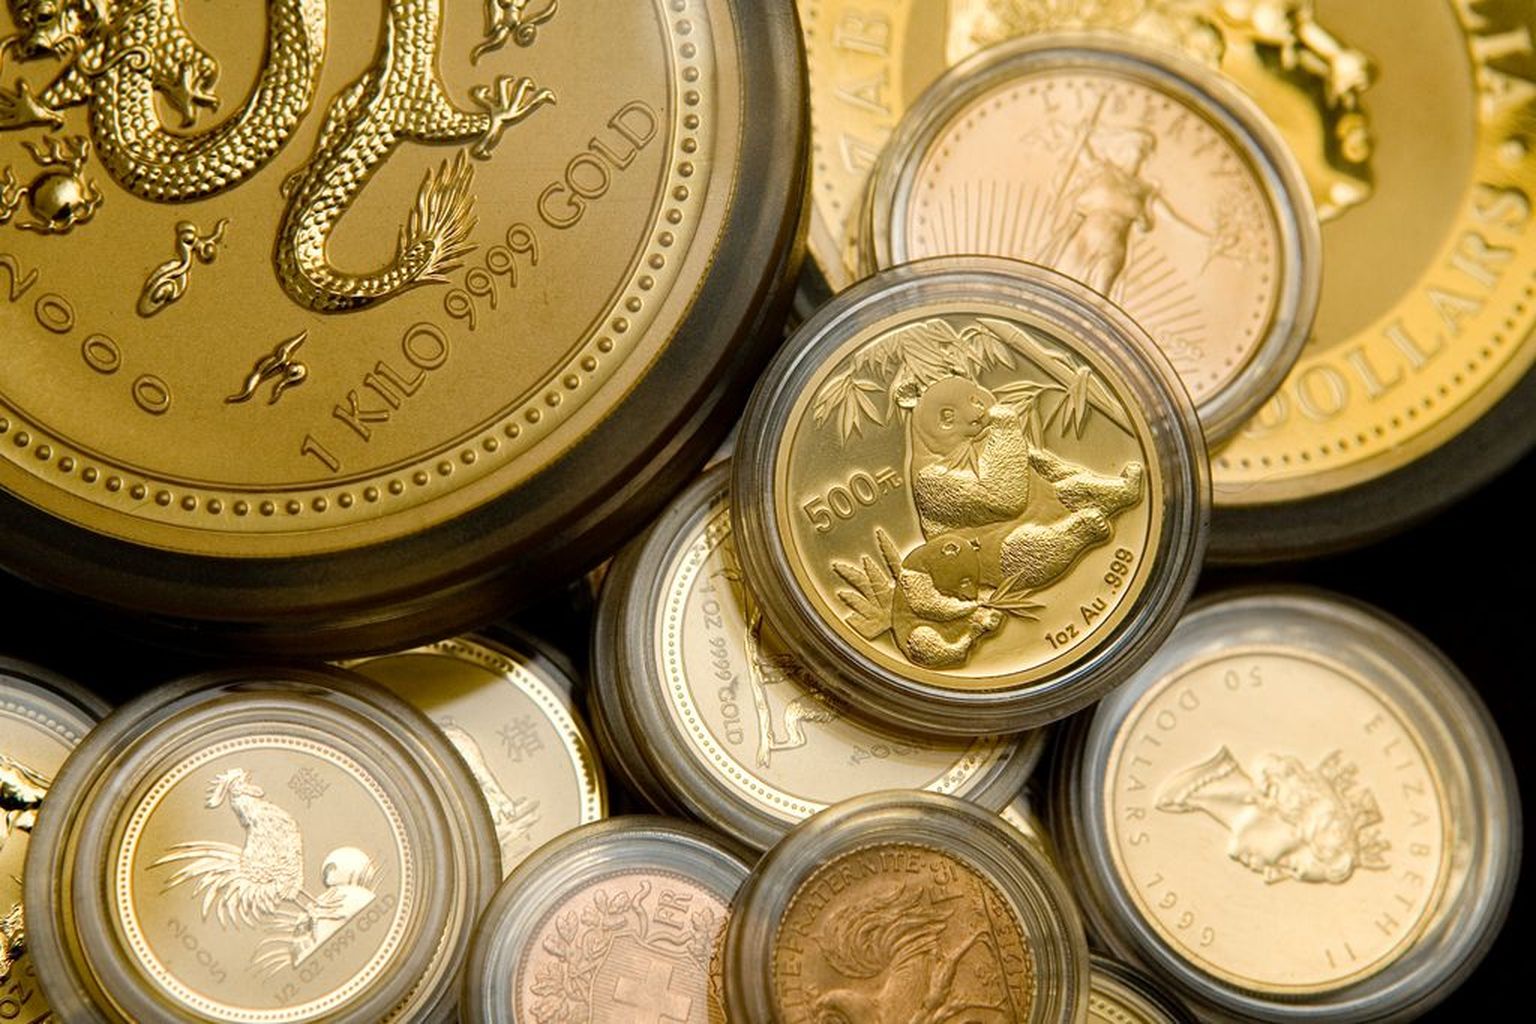 Pildil kuldmündid Tavid valuutavahetuses.